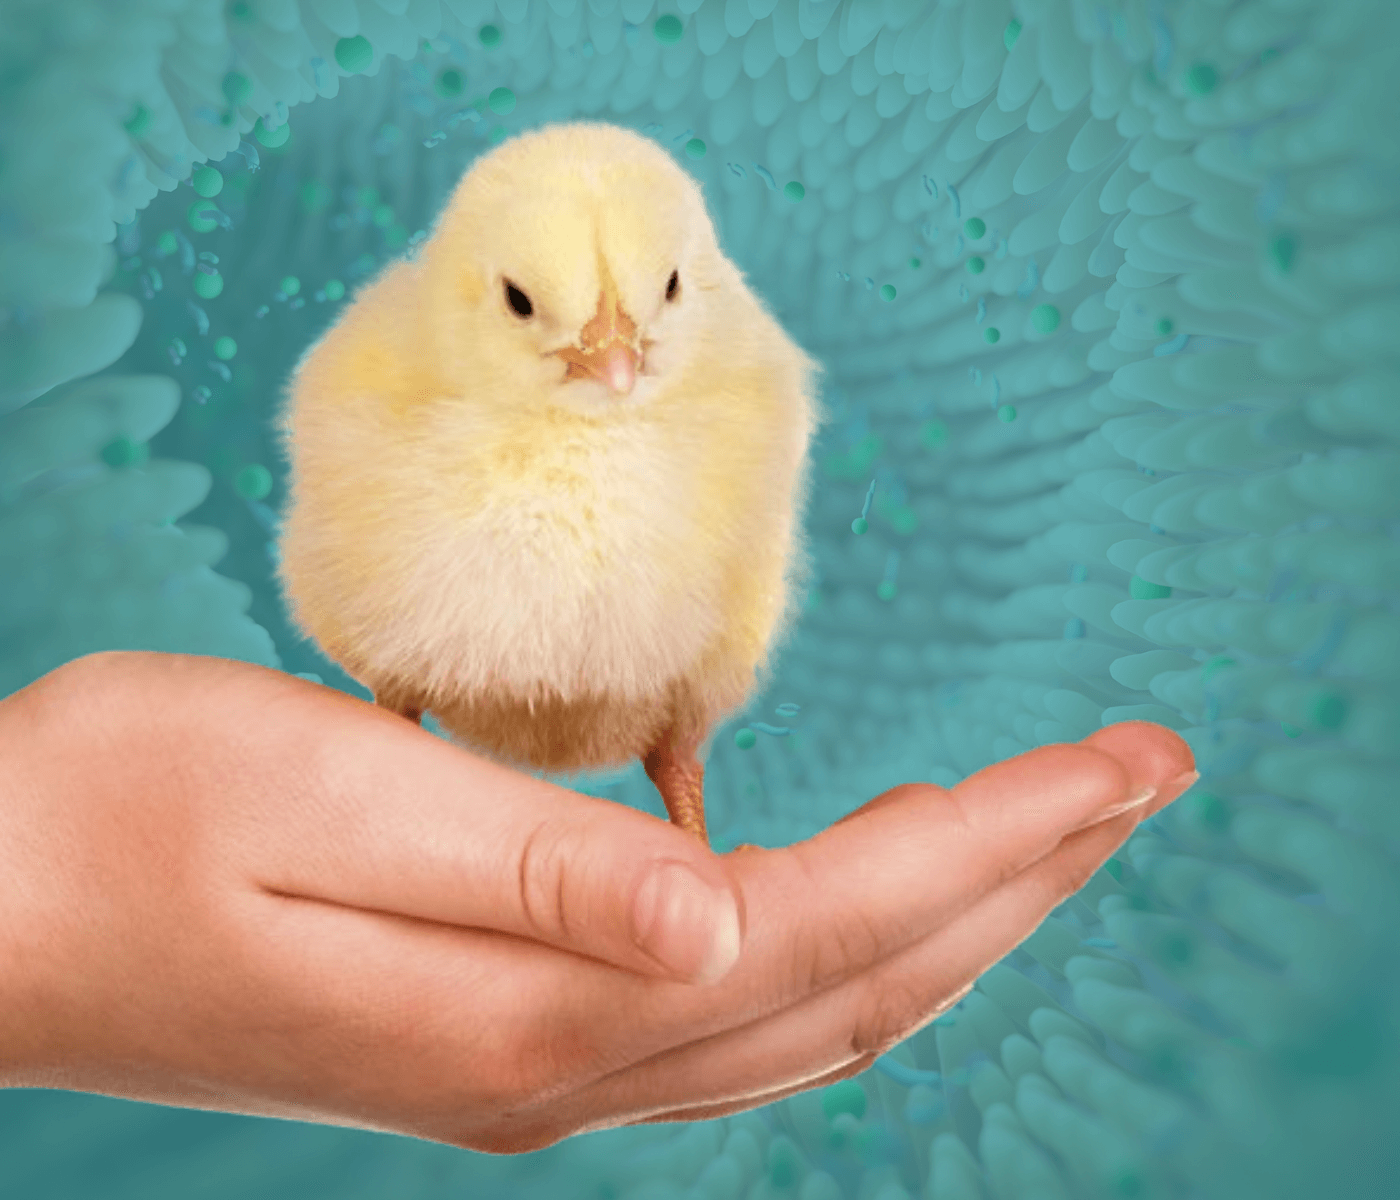 Evaluación de la salud intestinal en avicultura: Biomarcadores y aplicaciones